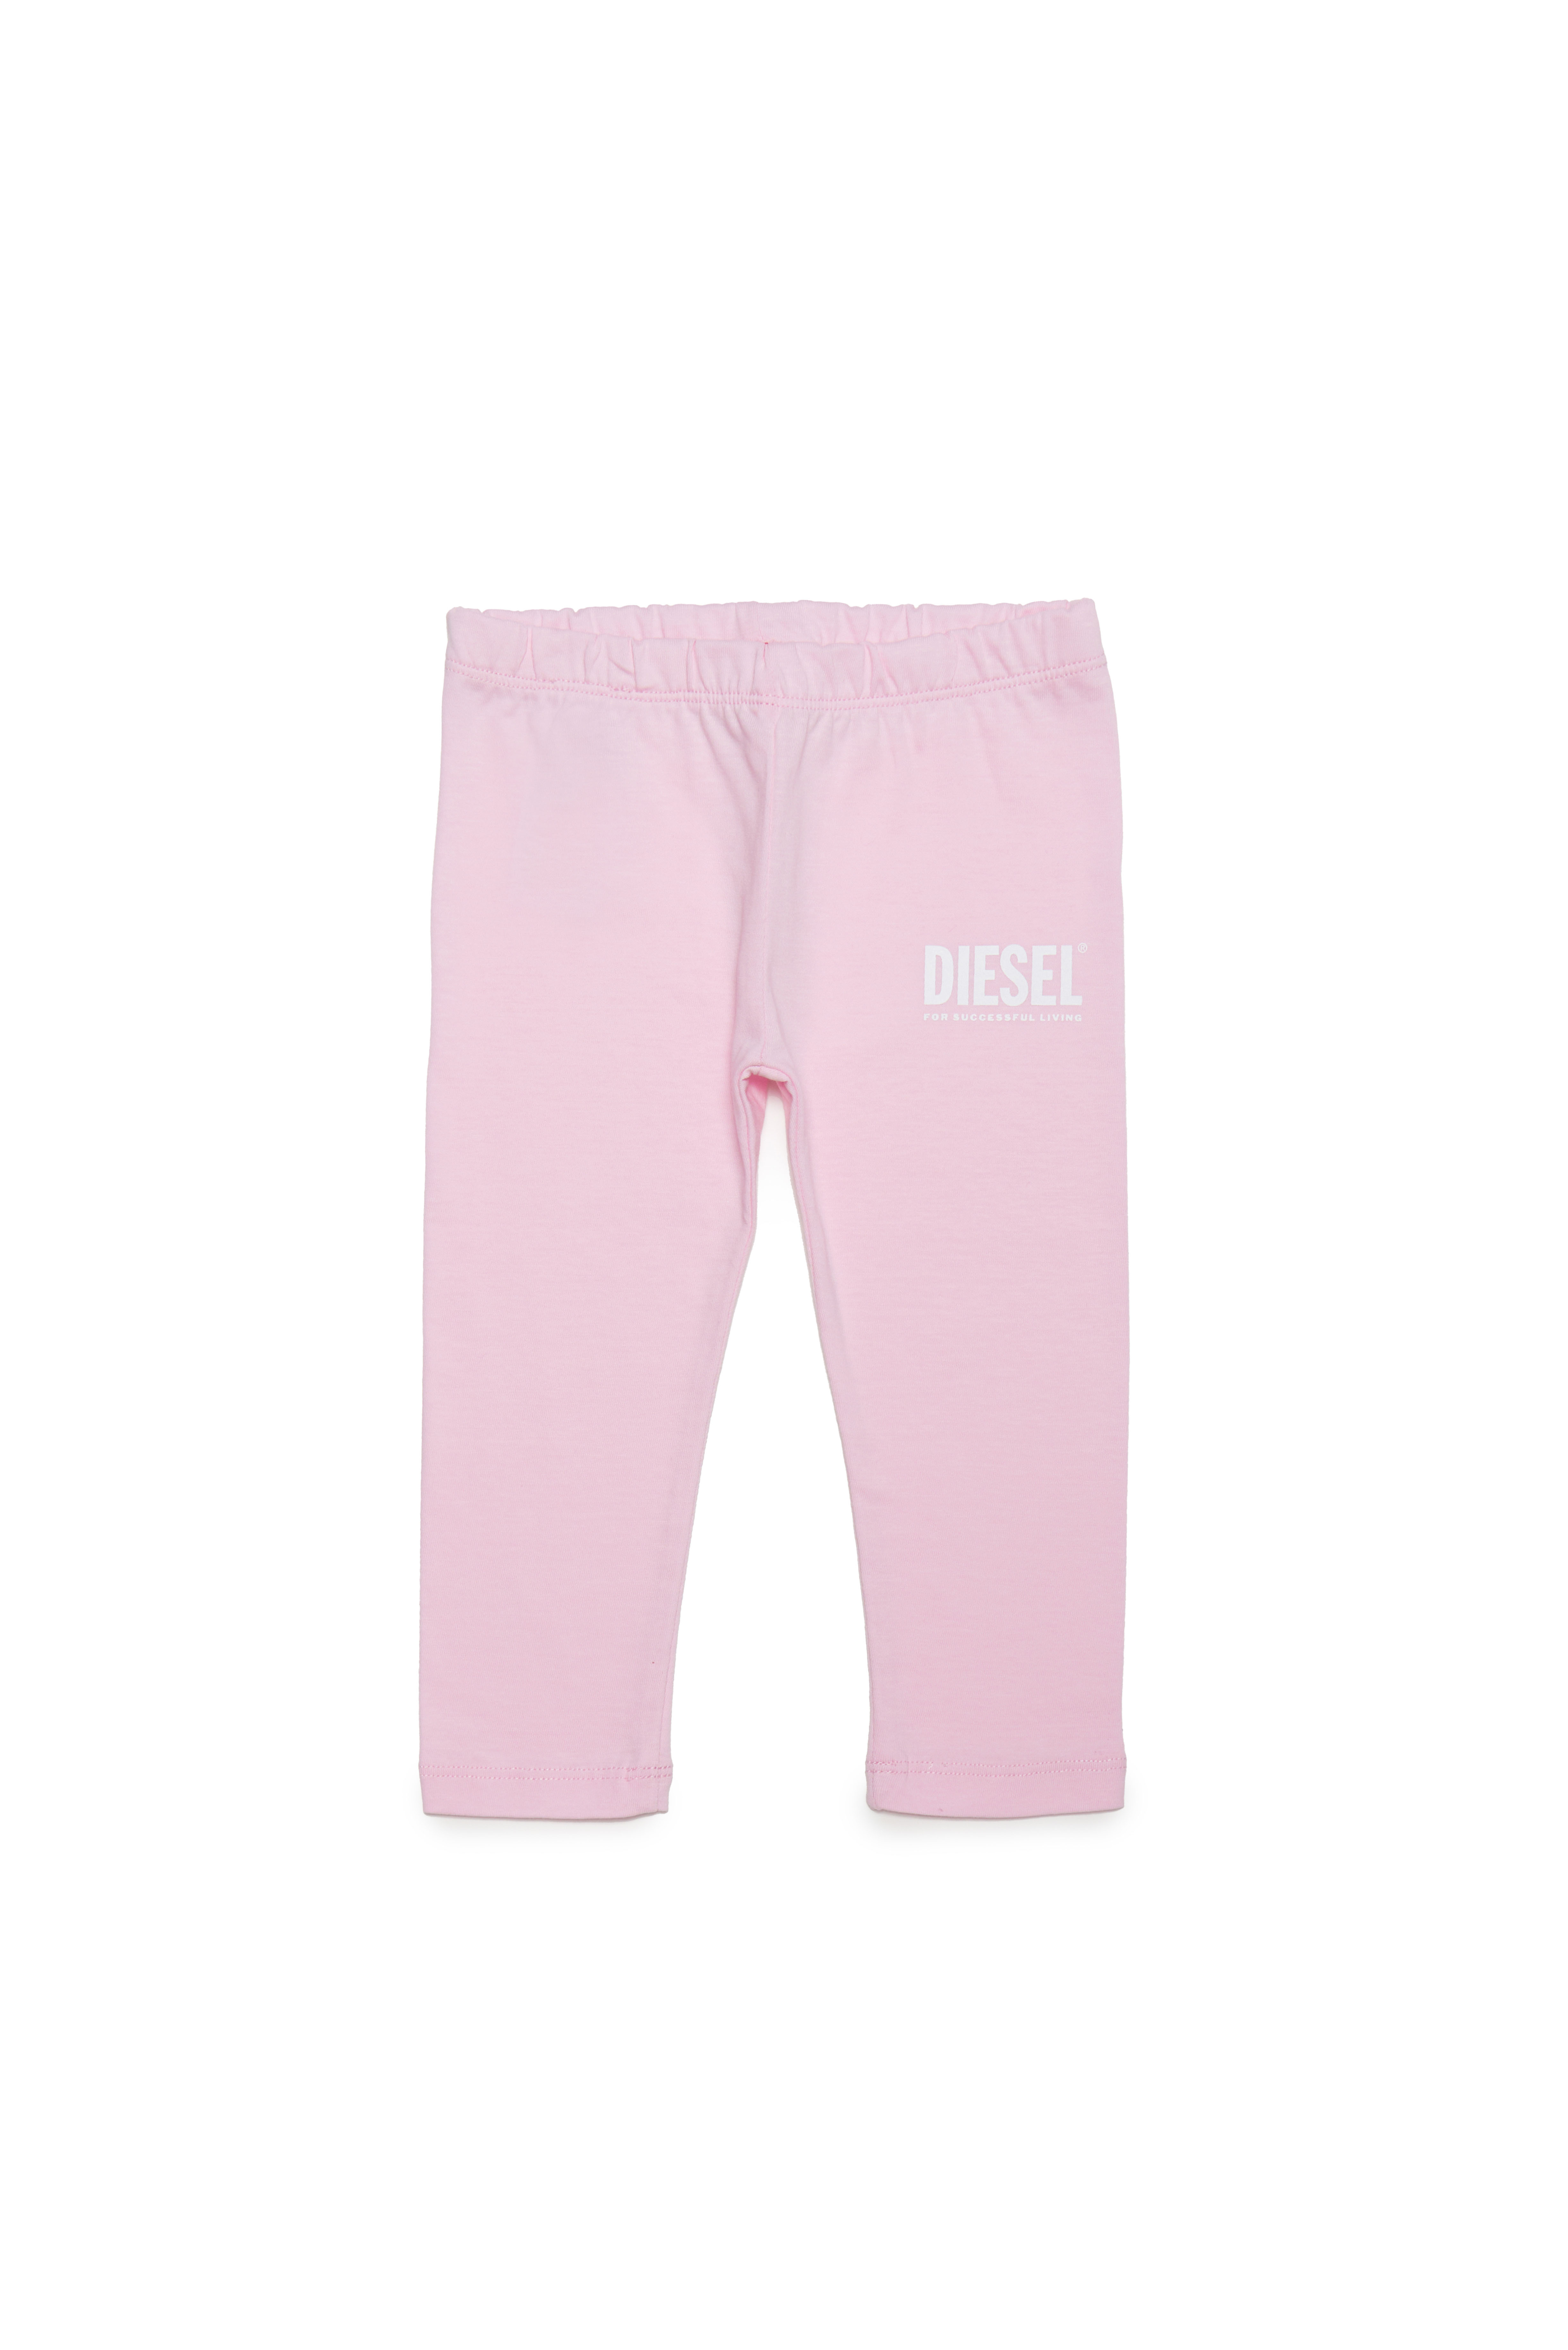 Diesel - Hose aus Baumwolle mit Logo-Print - Hosen - Damen - Rosa